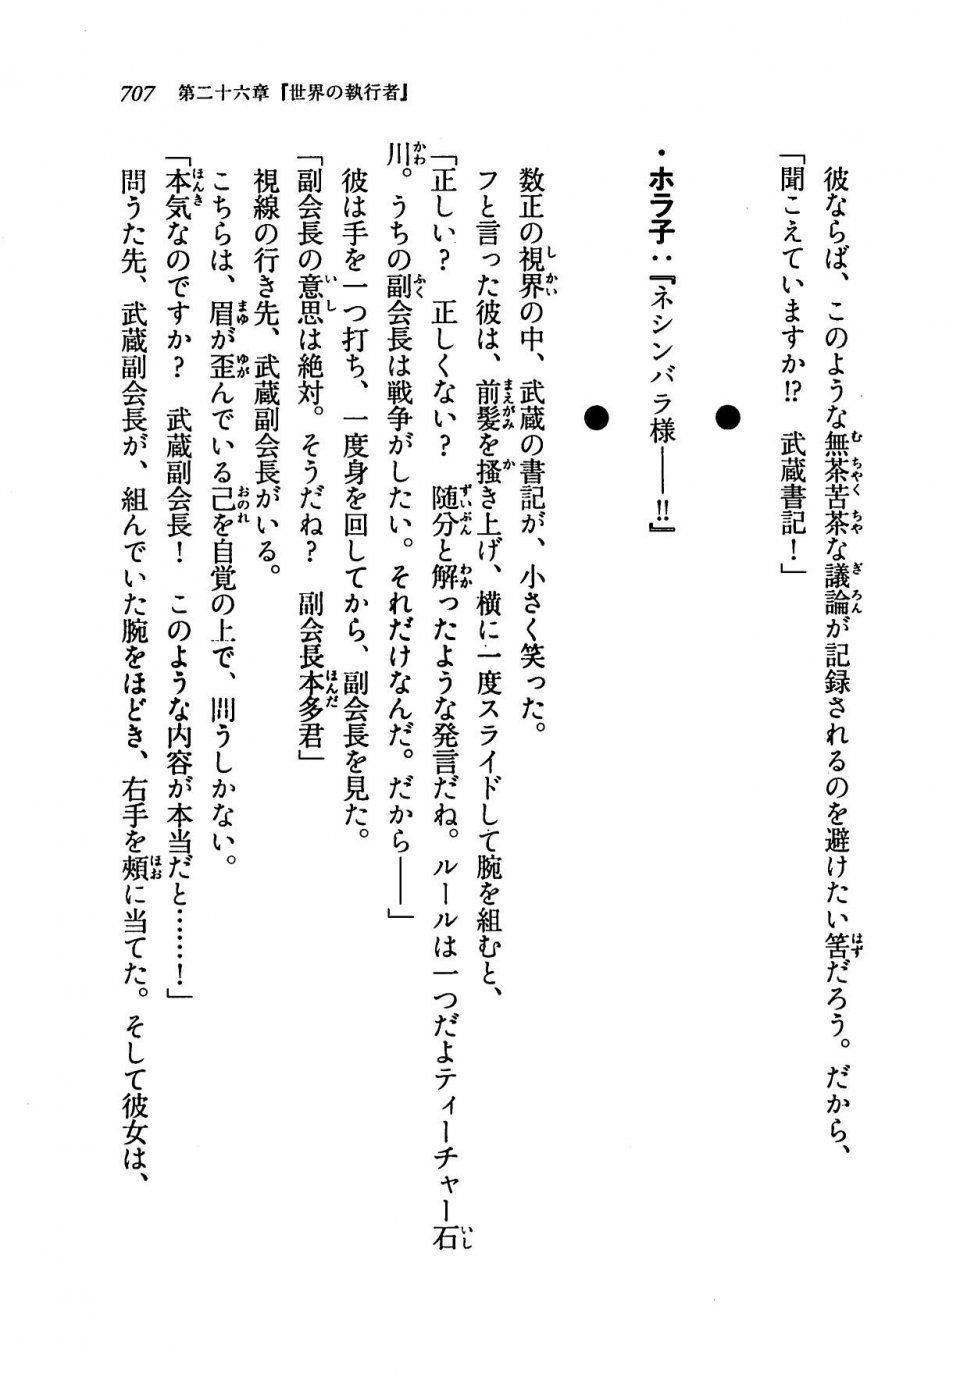 Kyoukai Senjou no Horizon LN Vol 19(8A) - Photo #707